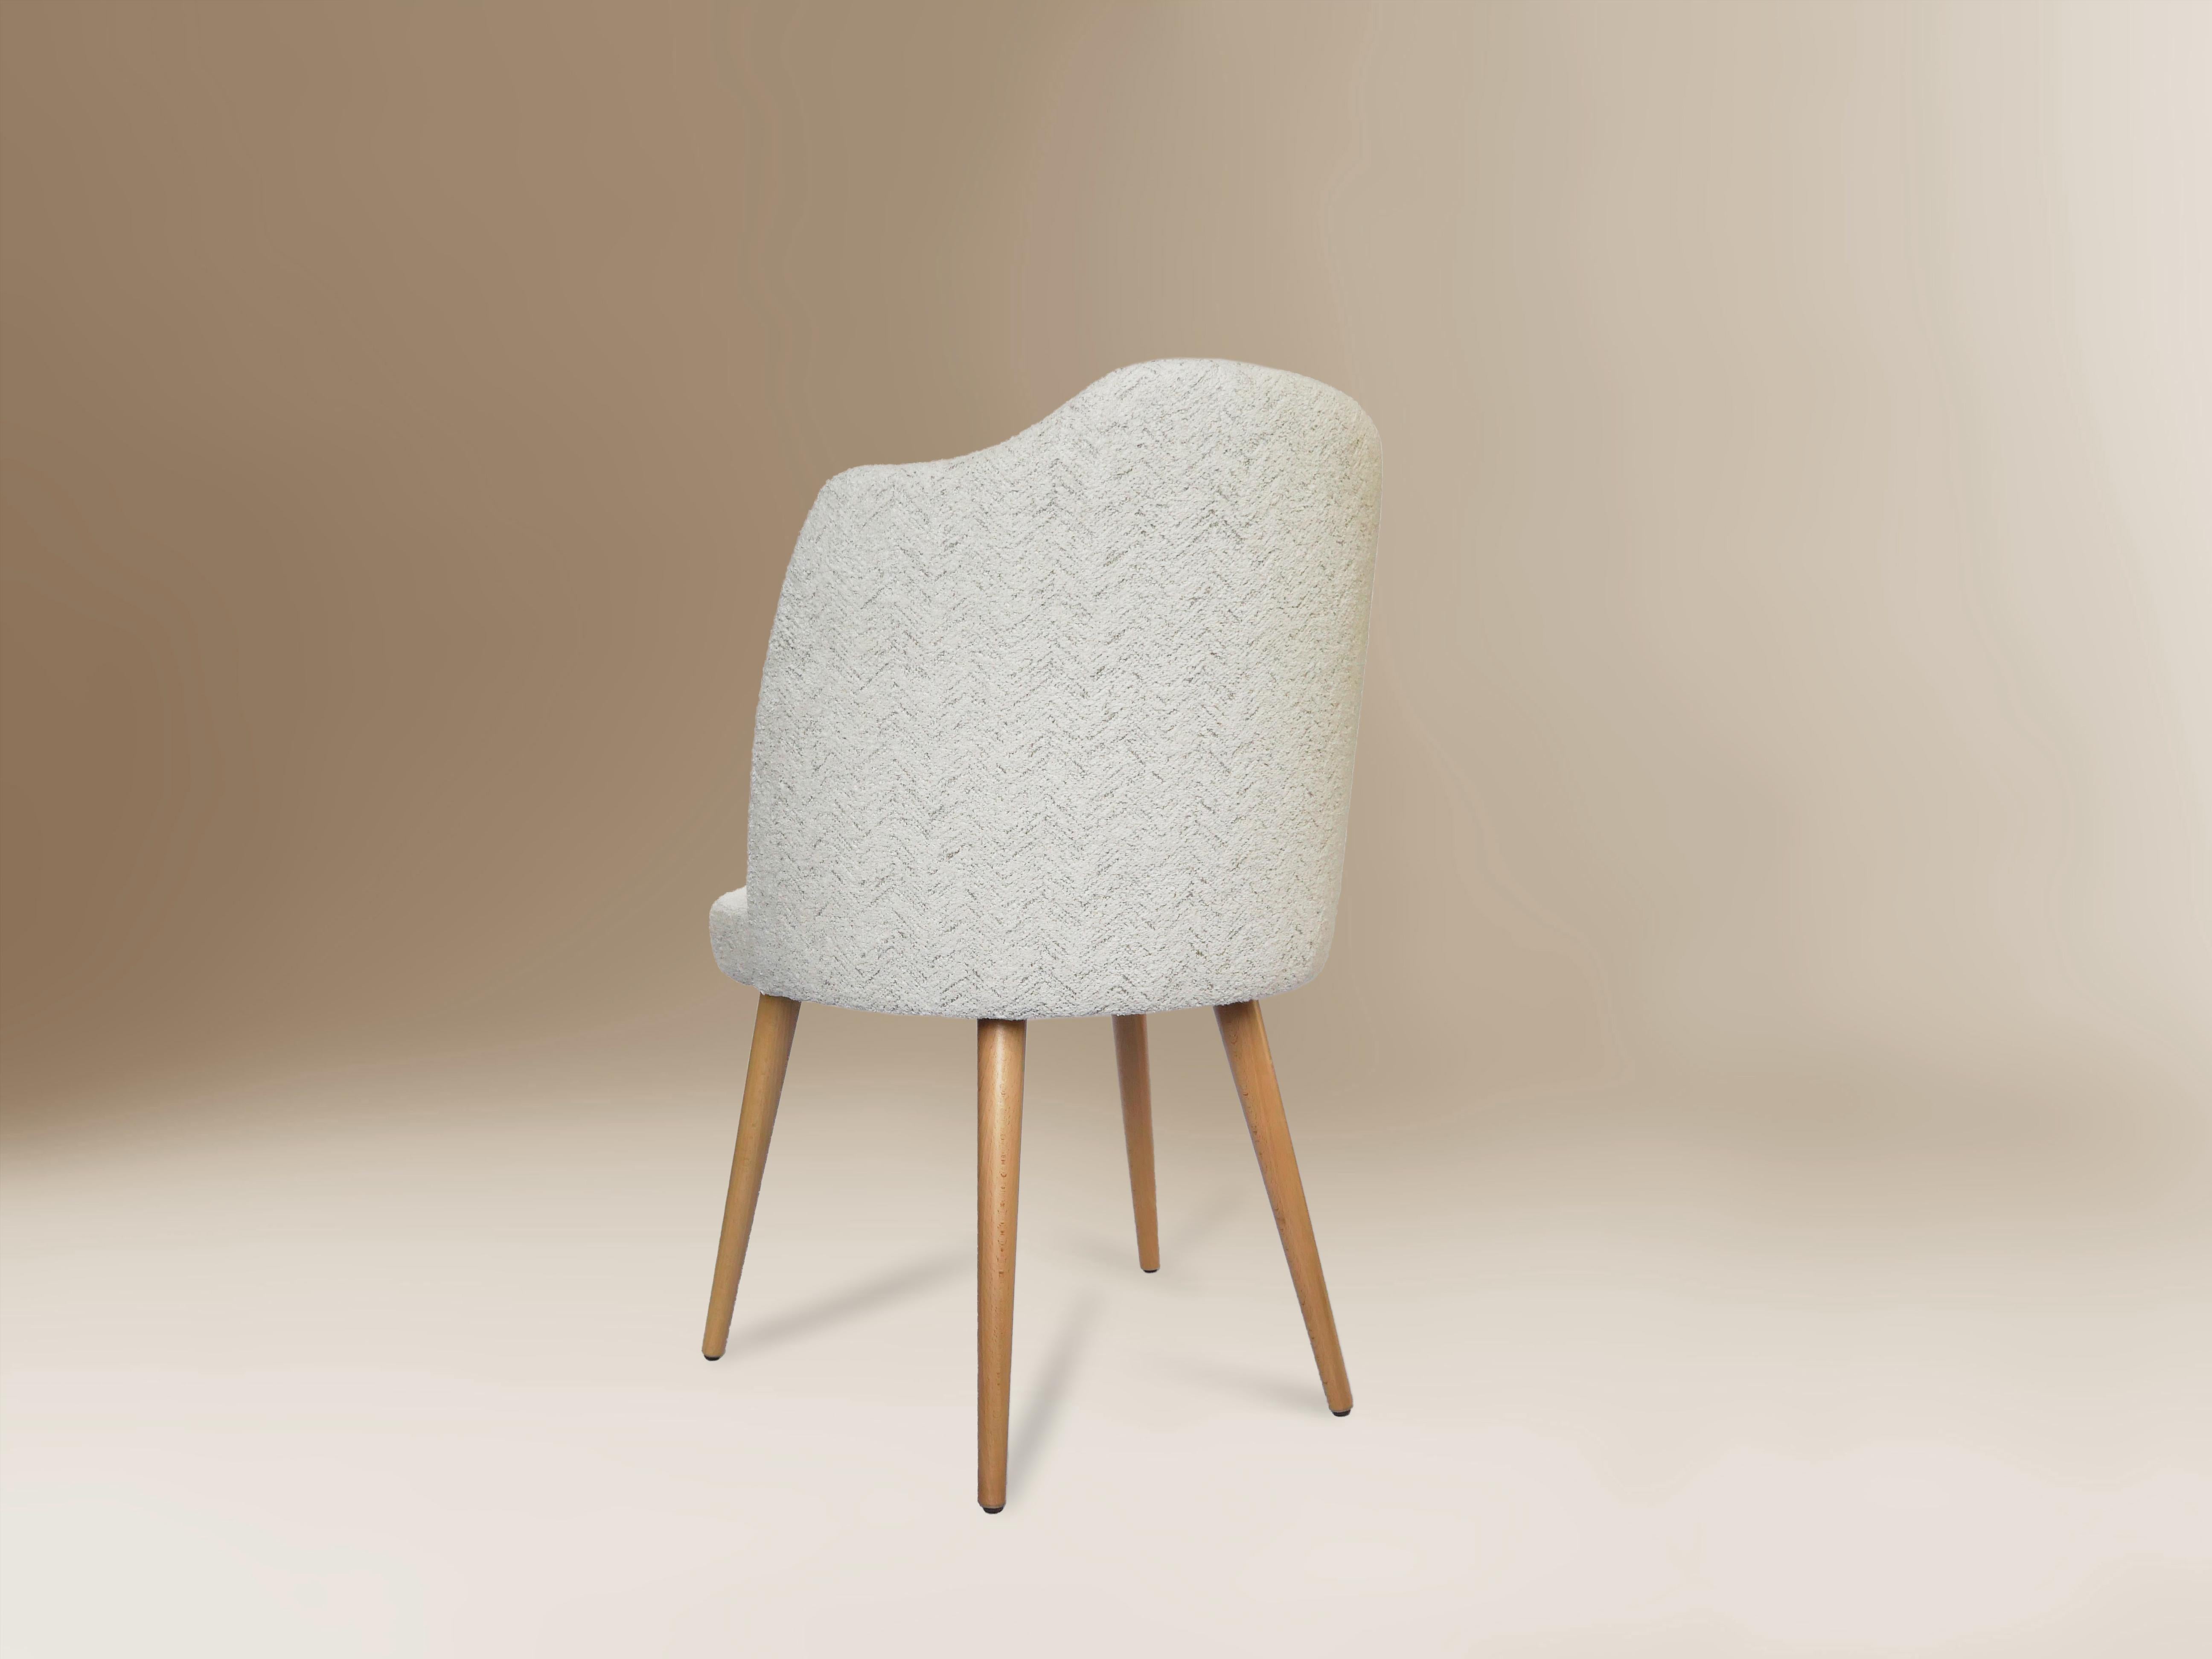 Der Yves-Stuhl wurde von dem renommierten spanischen Designer Sergio Prieto für Dovain Studio entworfen. Seine Formen und Materialien erlauben es ihm, sich an jede Umgebung anzupassen, von einem klassischen Raum bis hin zu etwas zeitgenössischem und